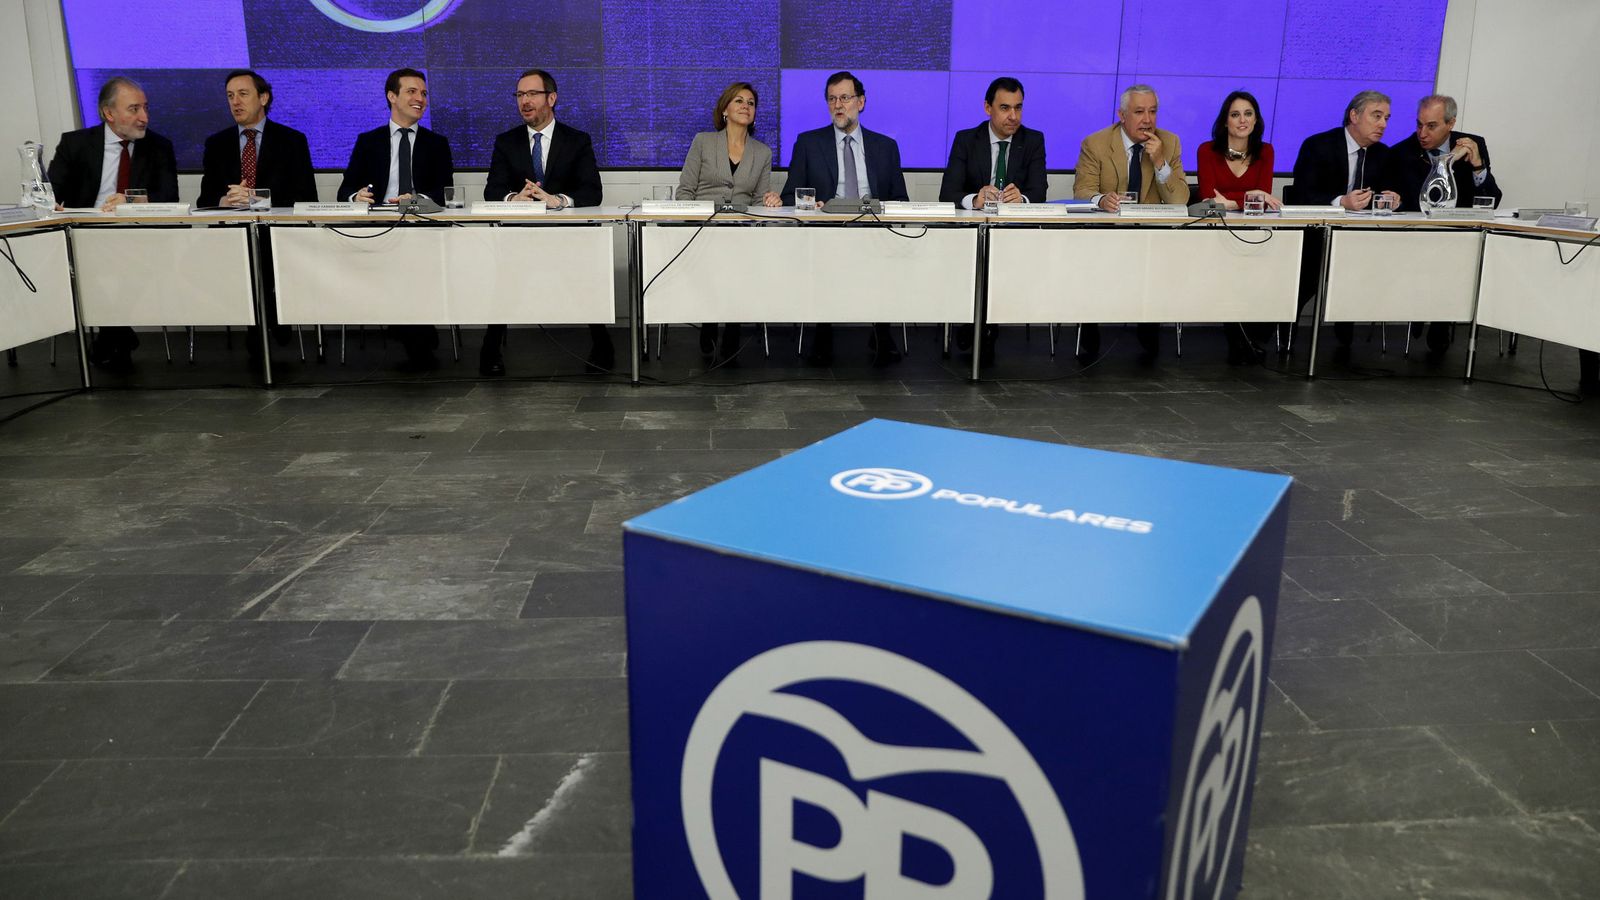 Foto: Rajoy preside la reunión del comité ejecutivo nacional del PP que aprobó el reglamento y los horarios del congreso nacional.